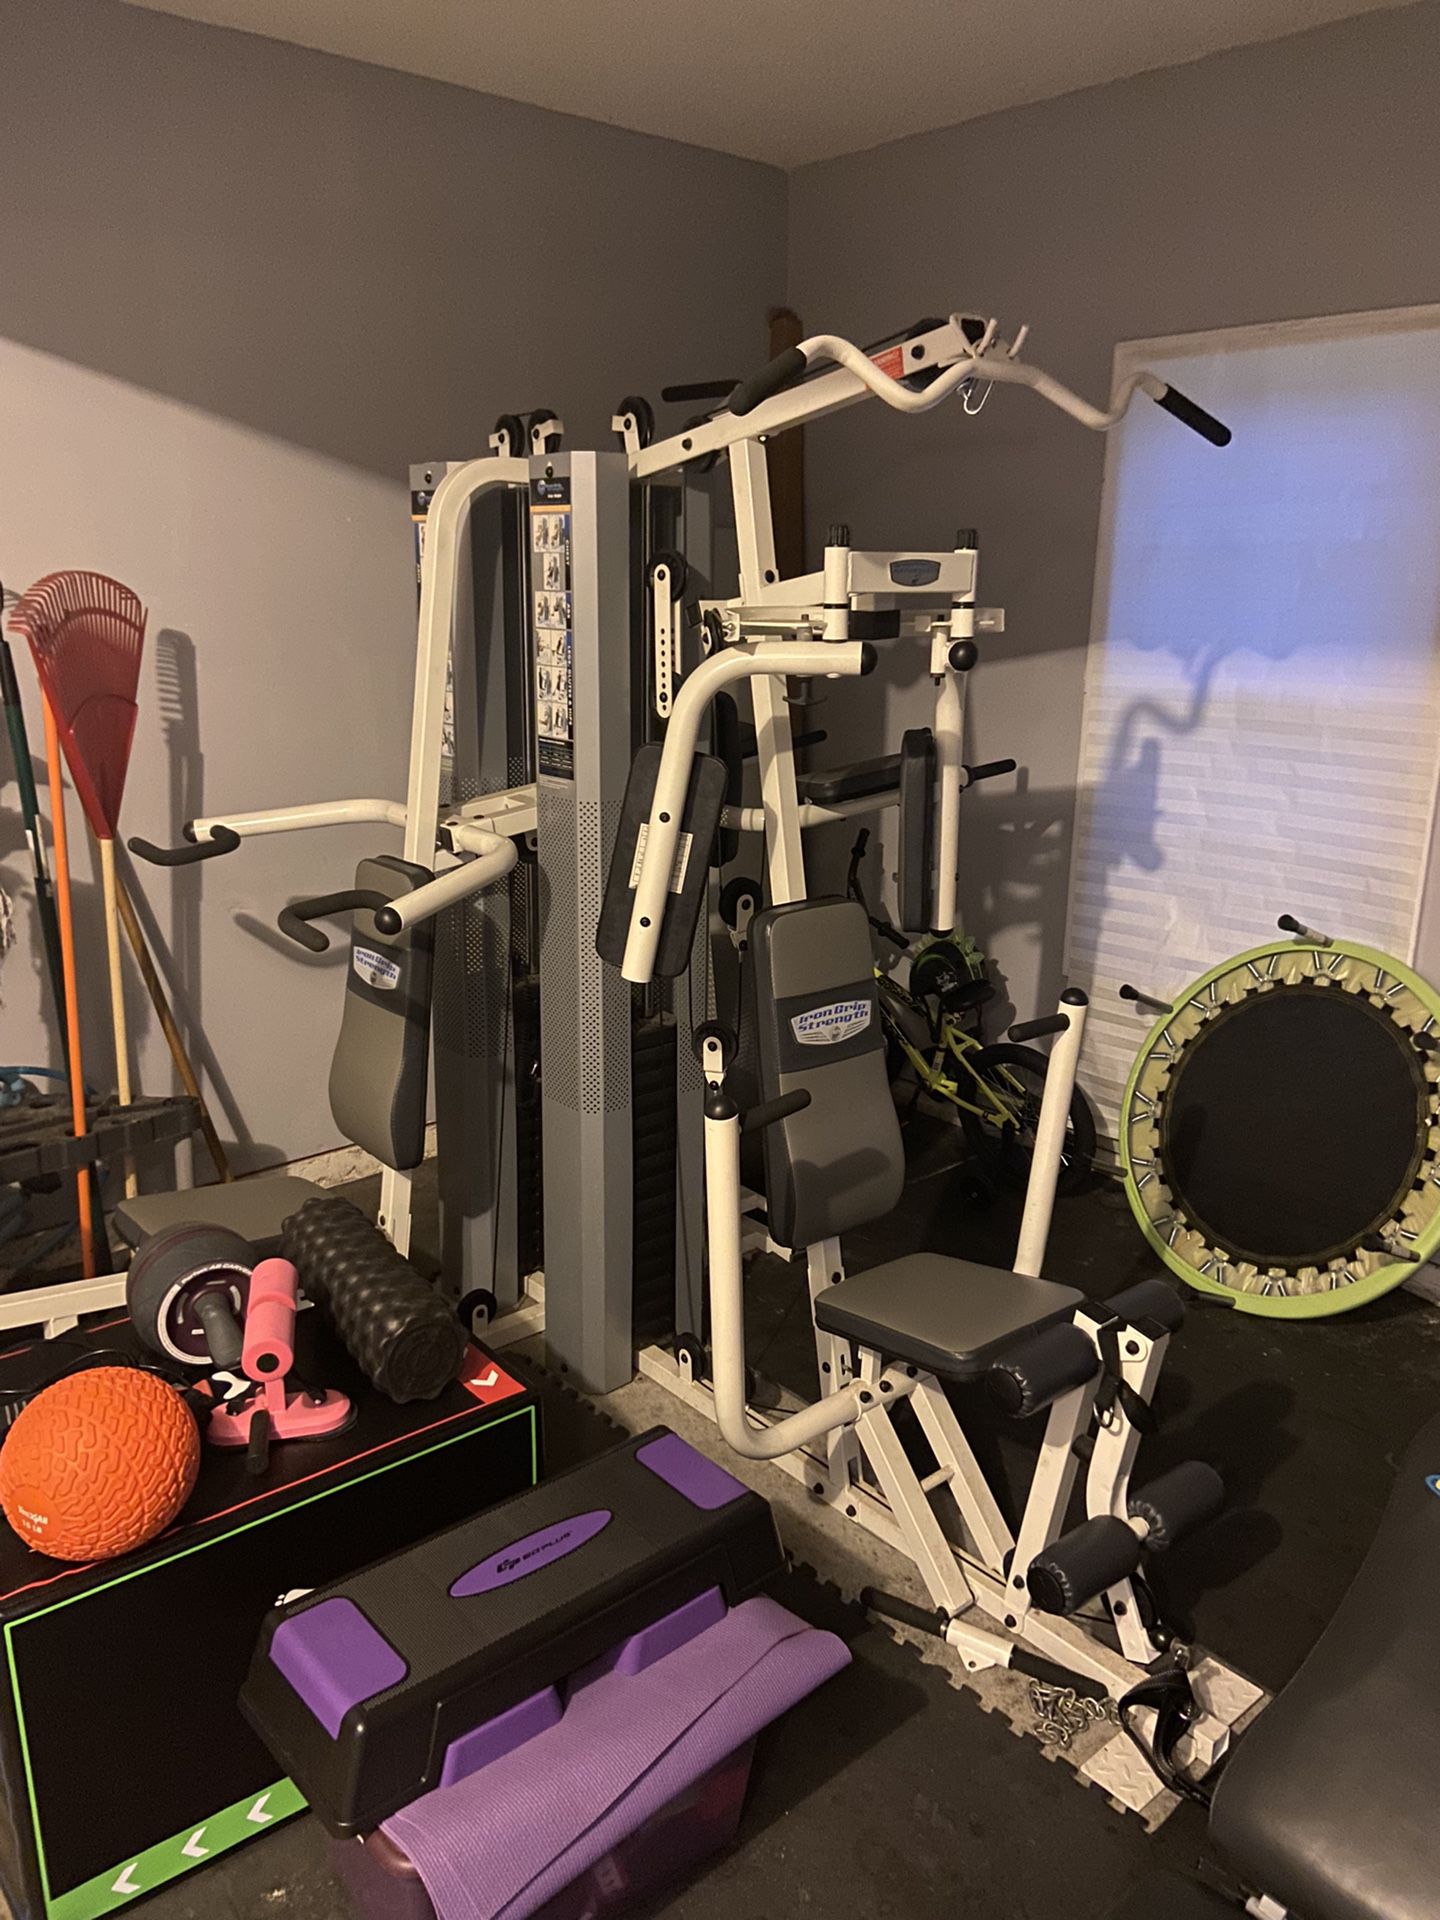 Workout Equipment /treadmill